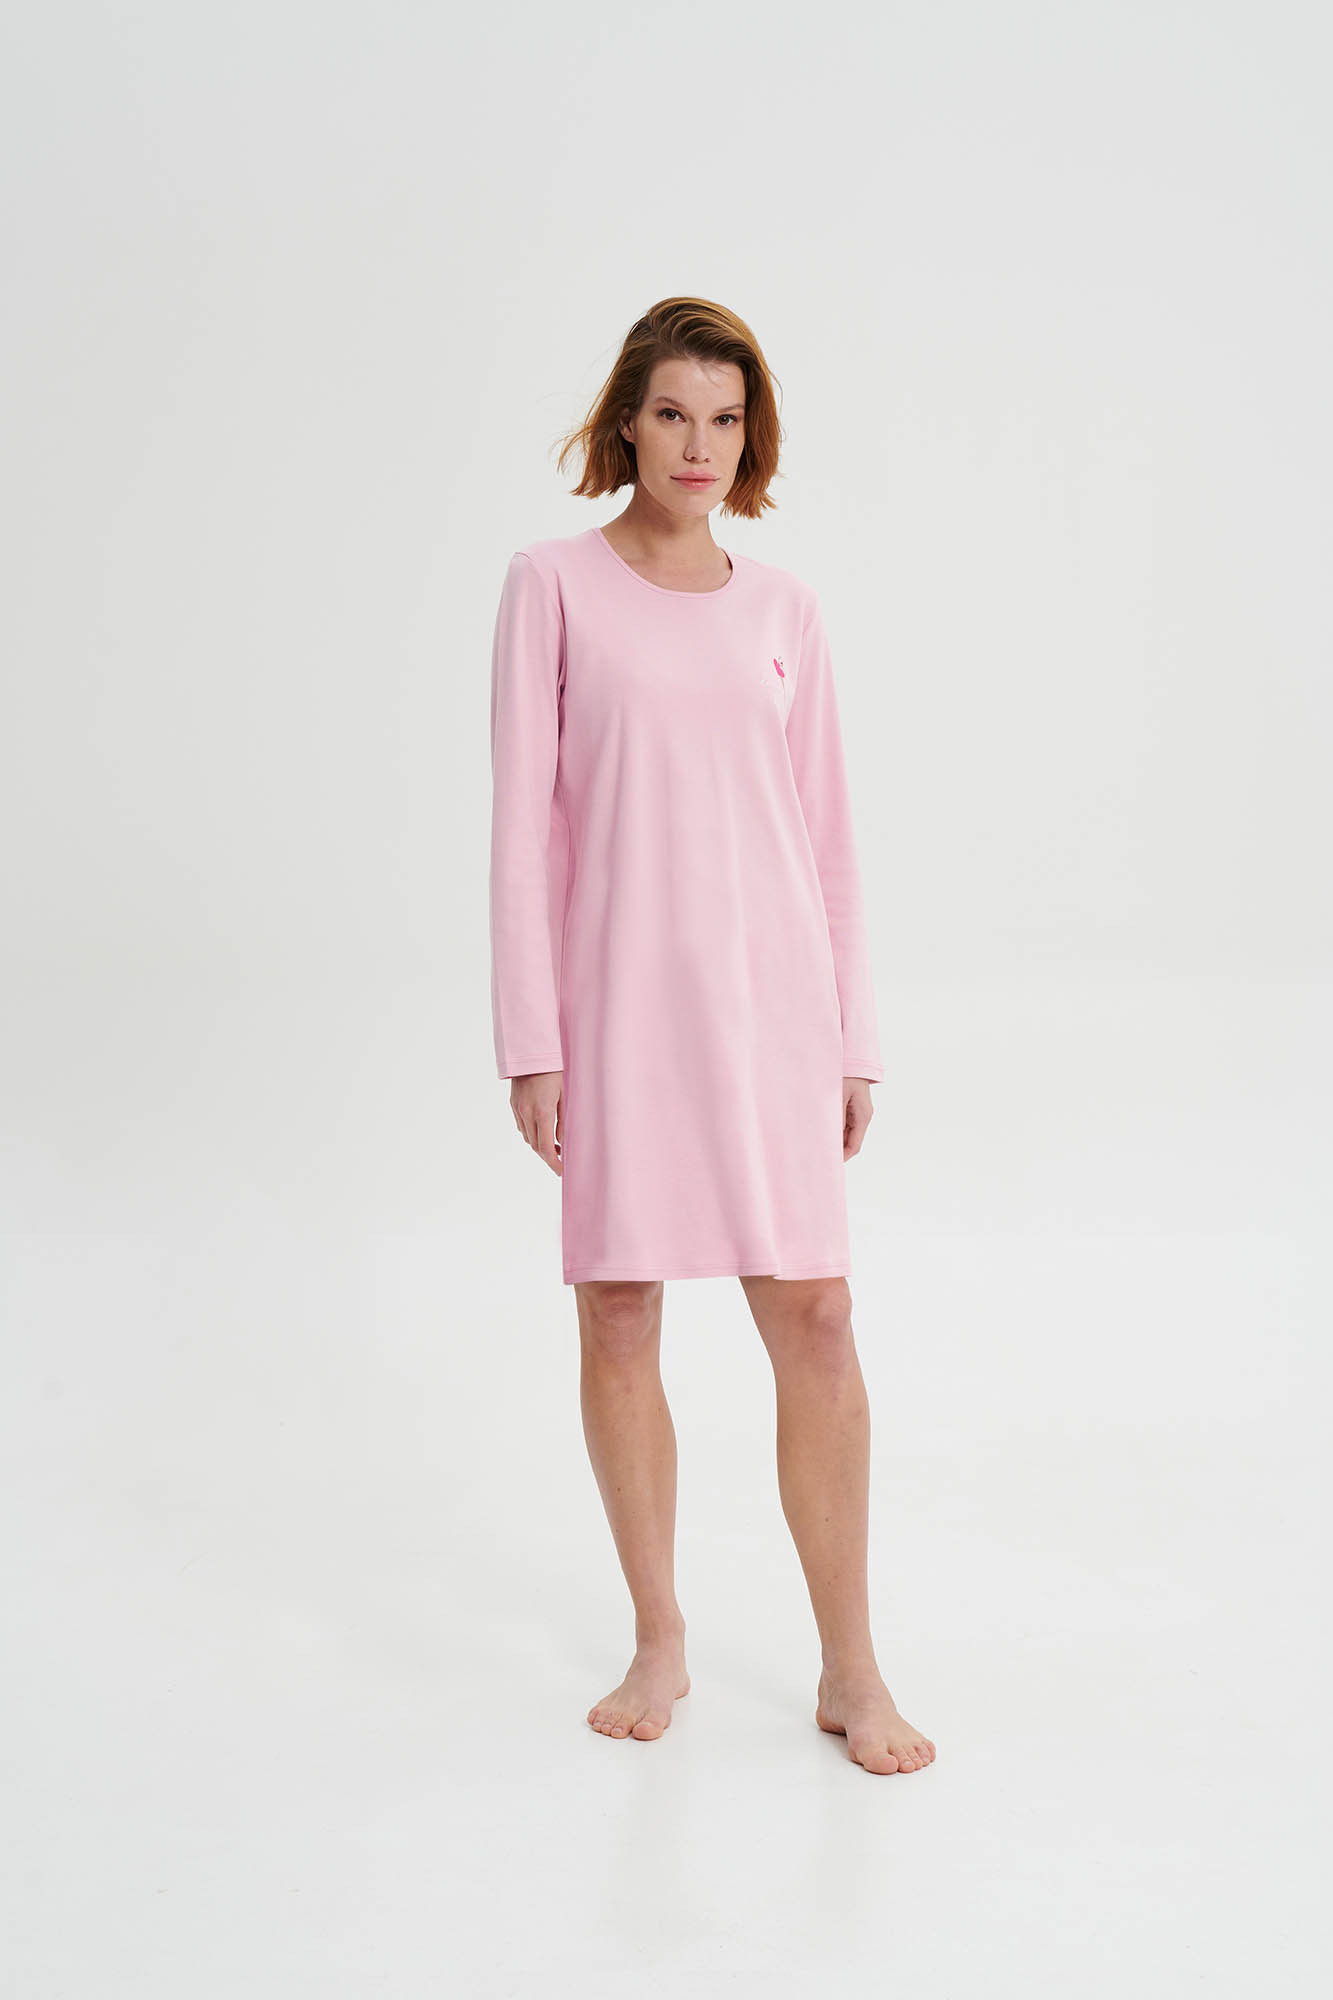 Vamp - Noční košile s dlouhým rukávem 19456 - Vamp pink nectar M